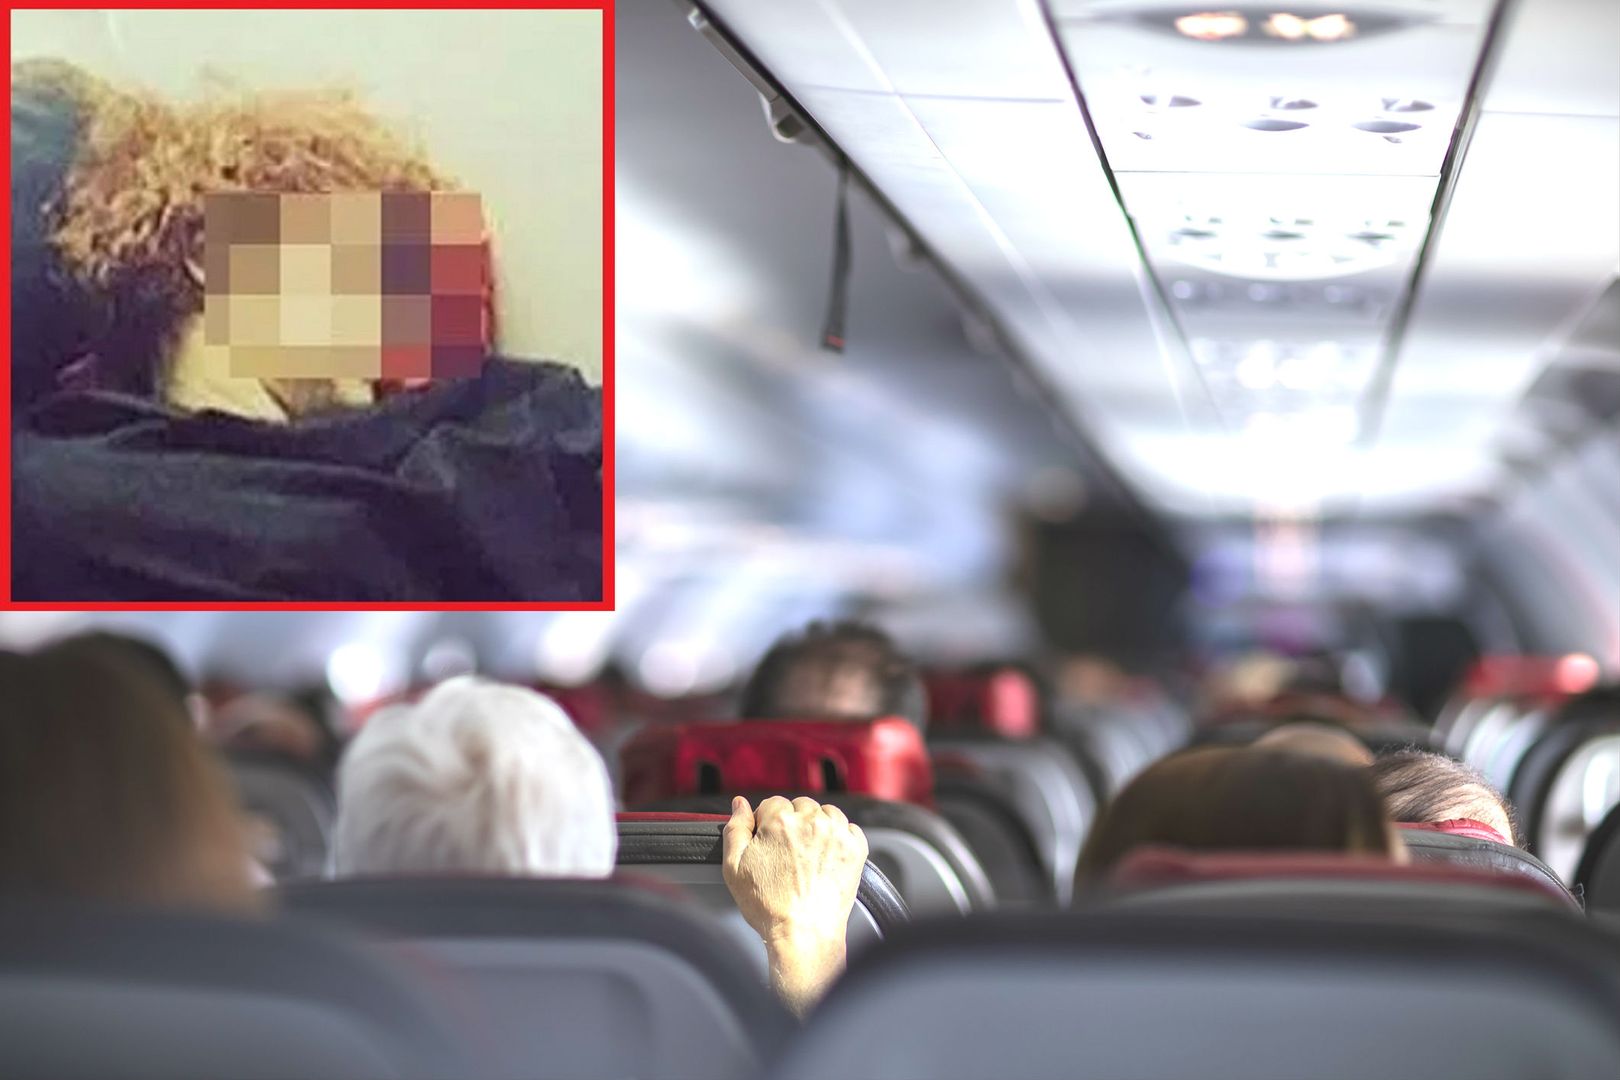 Zdjęcie z samolotu rozpętało burzę. Pasażerka sprytna czy niemądra?